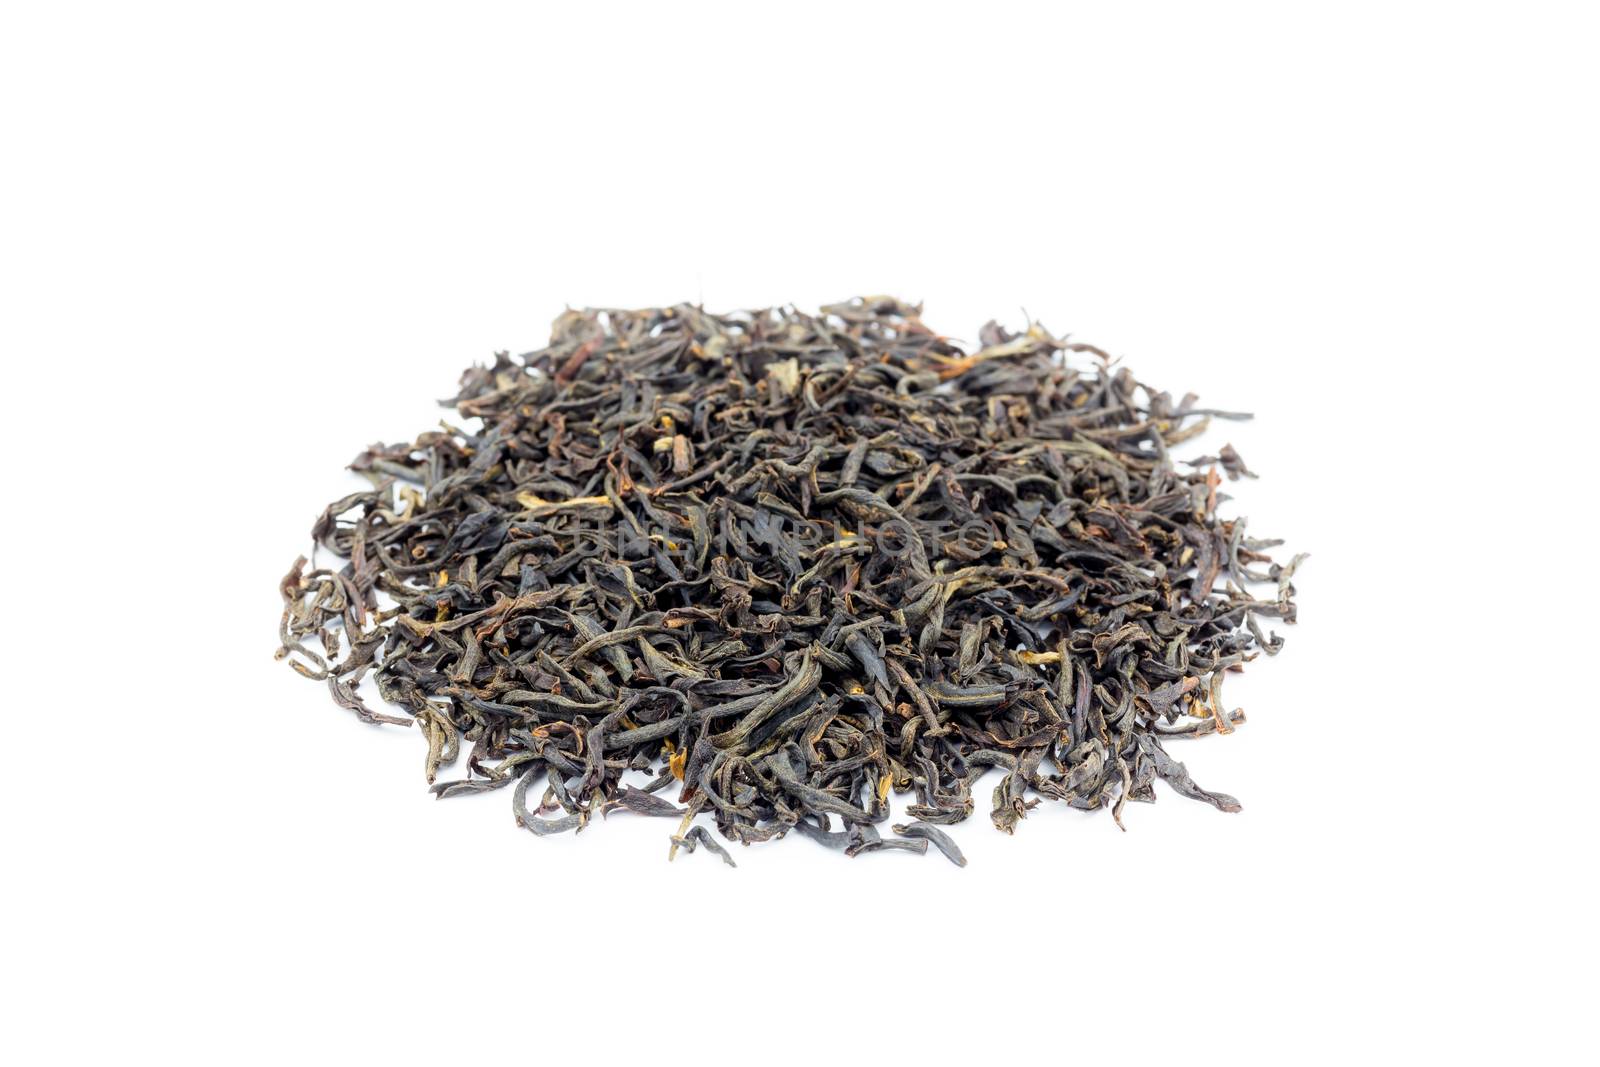 Heap of loose black tea Assam by BenSchonewille